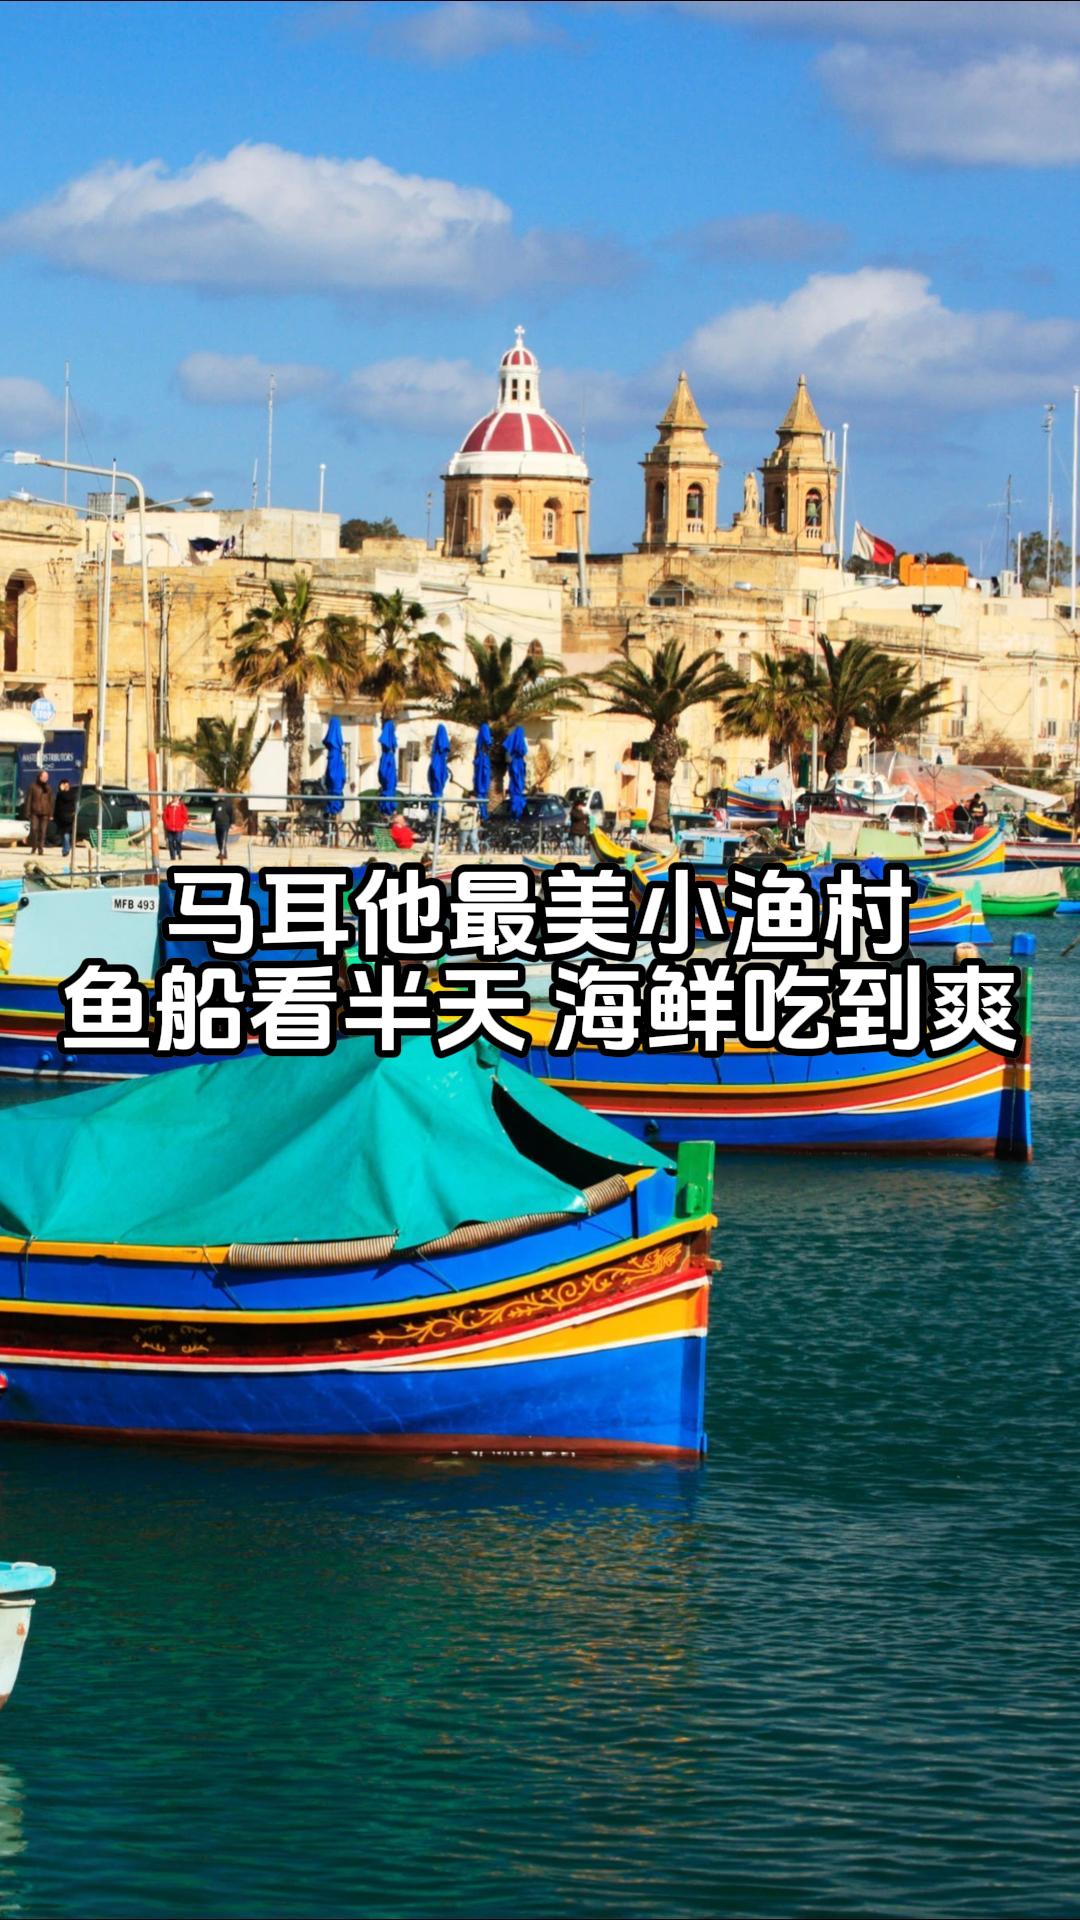 马耳他最美小渔村 去了就为看一眼五彩鱼船